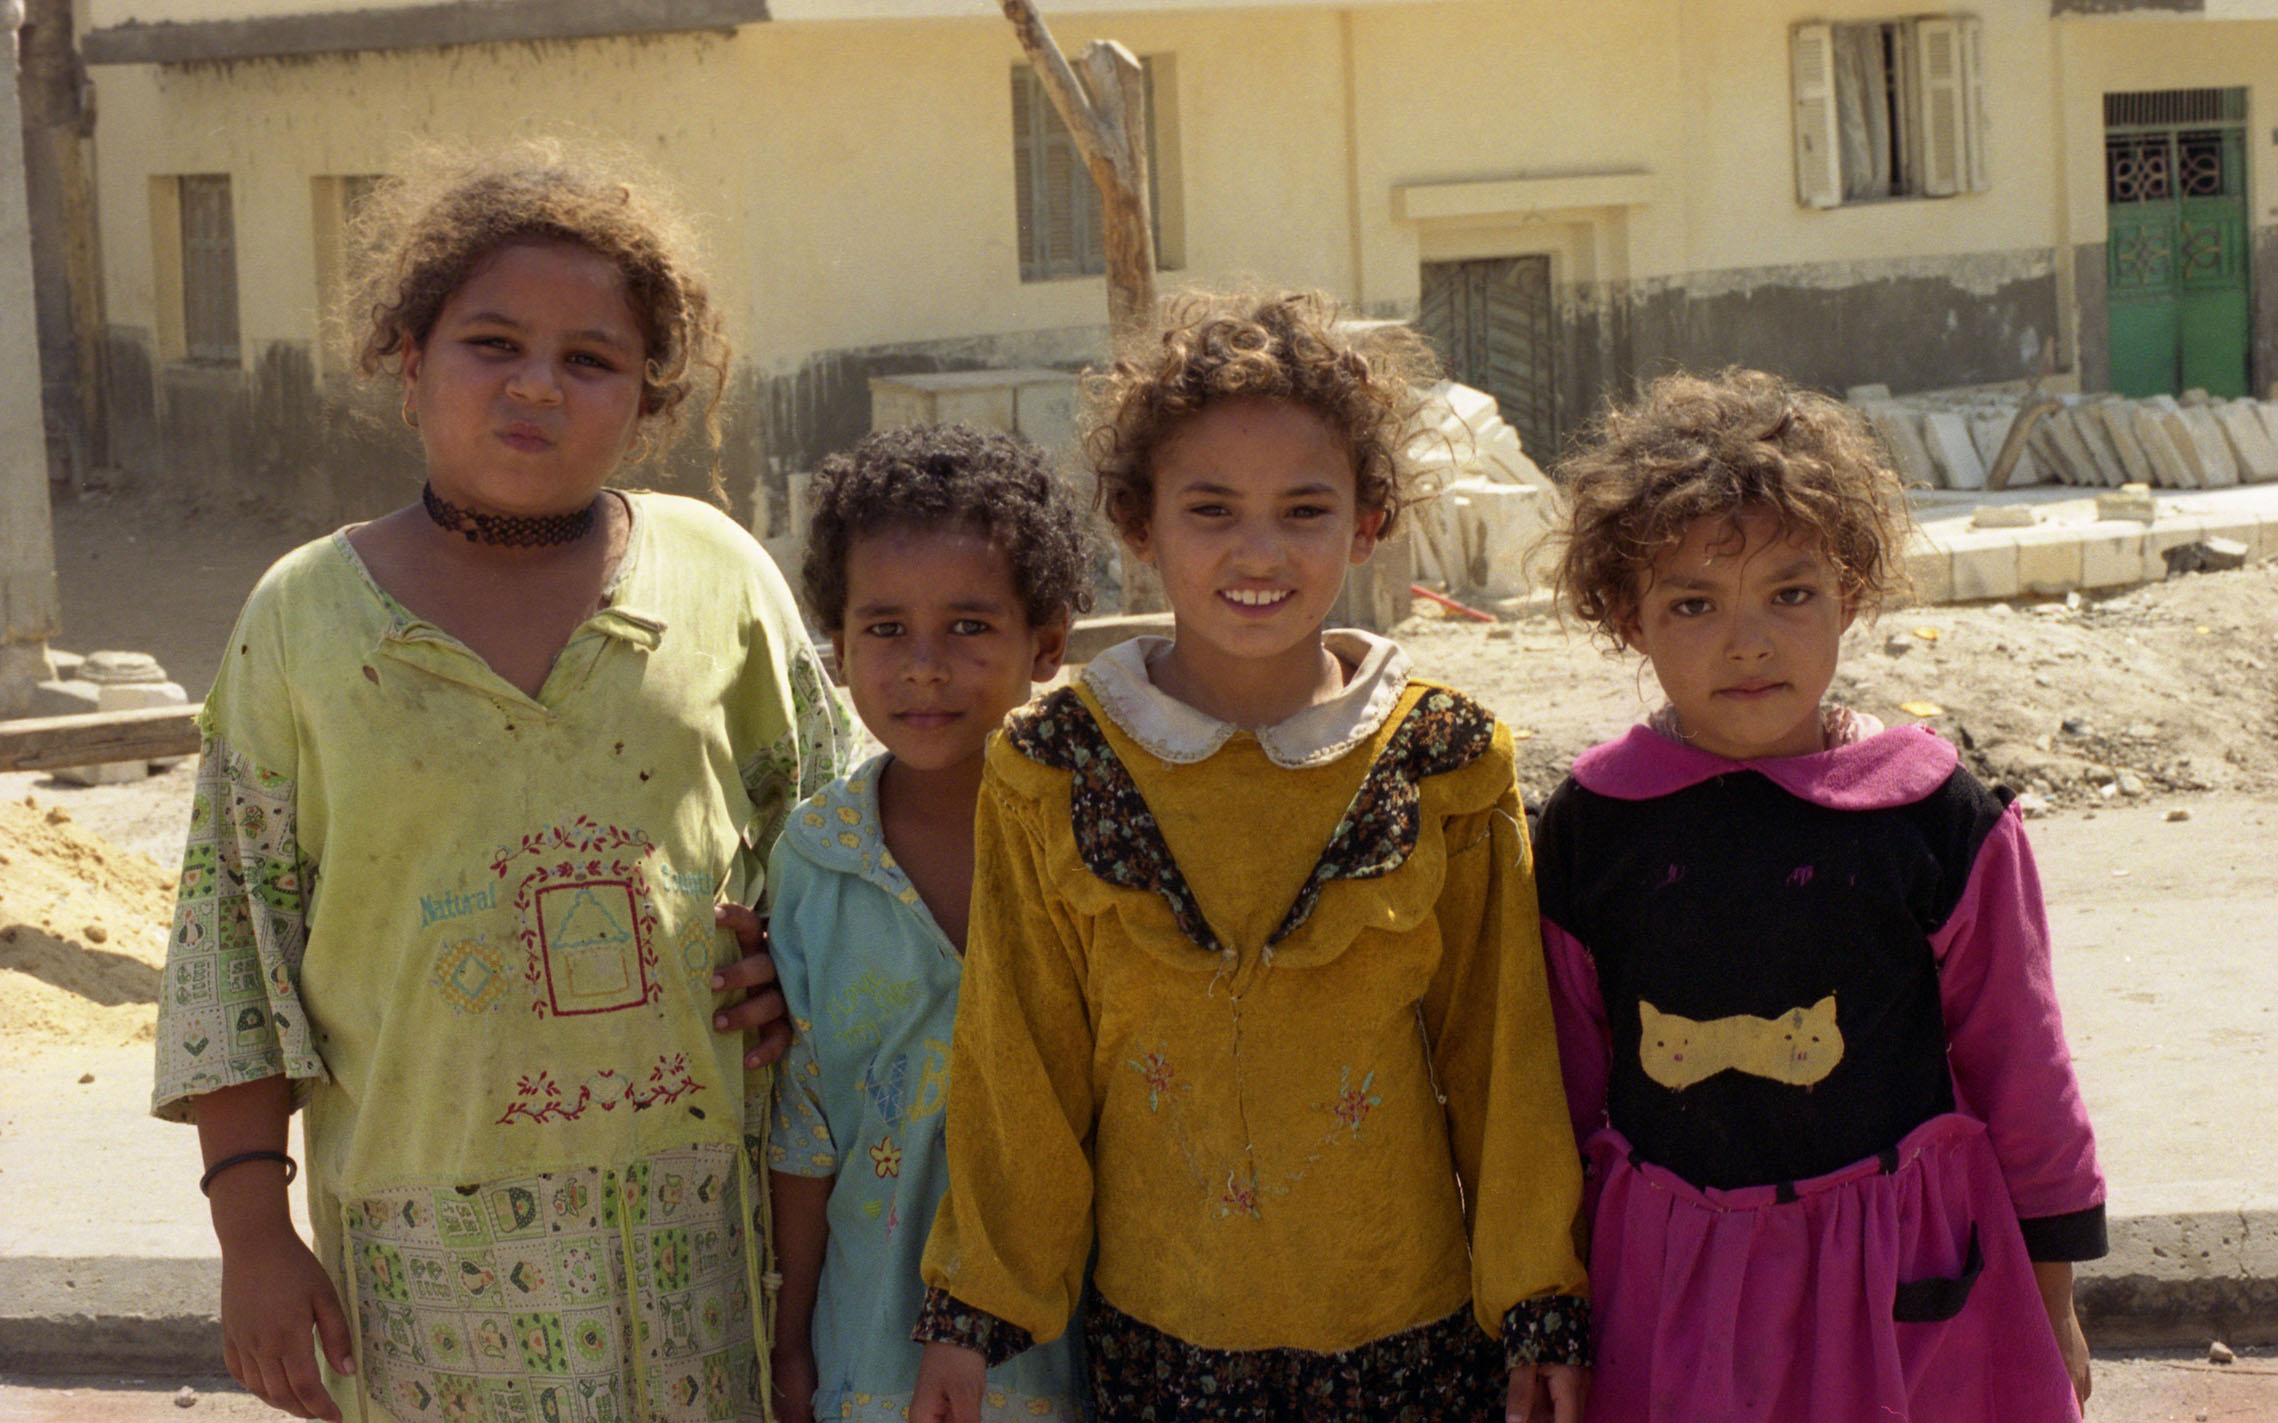 Children of Cairo, Cairo, Egypt